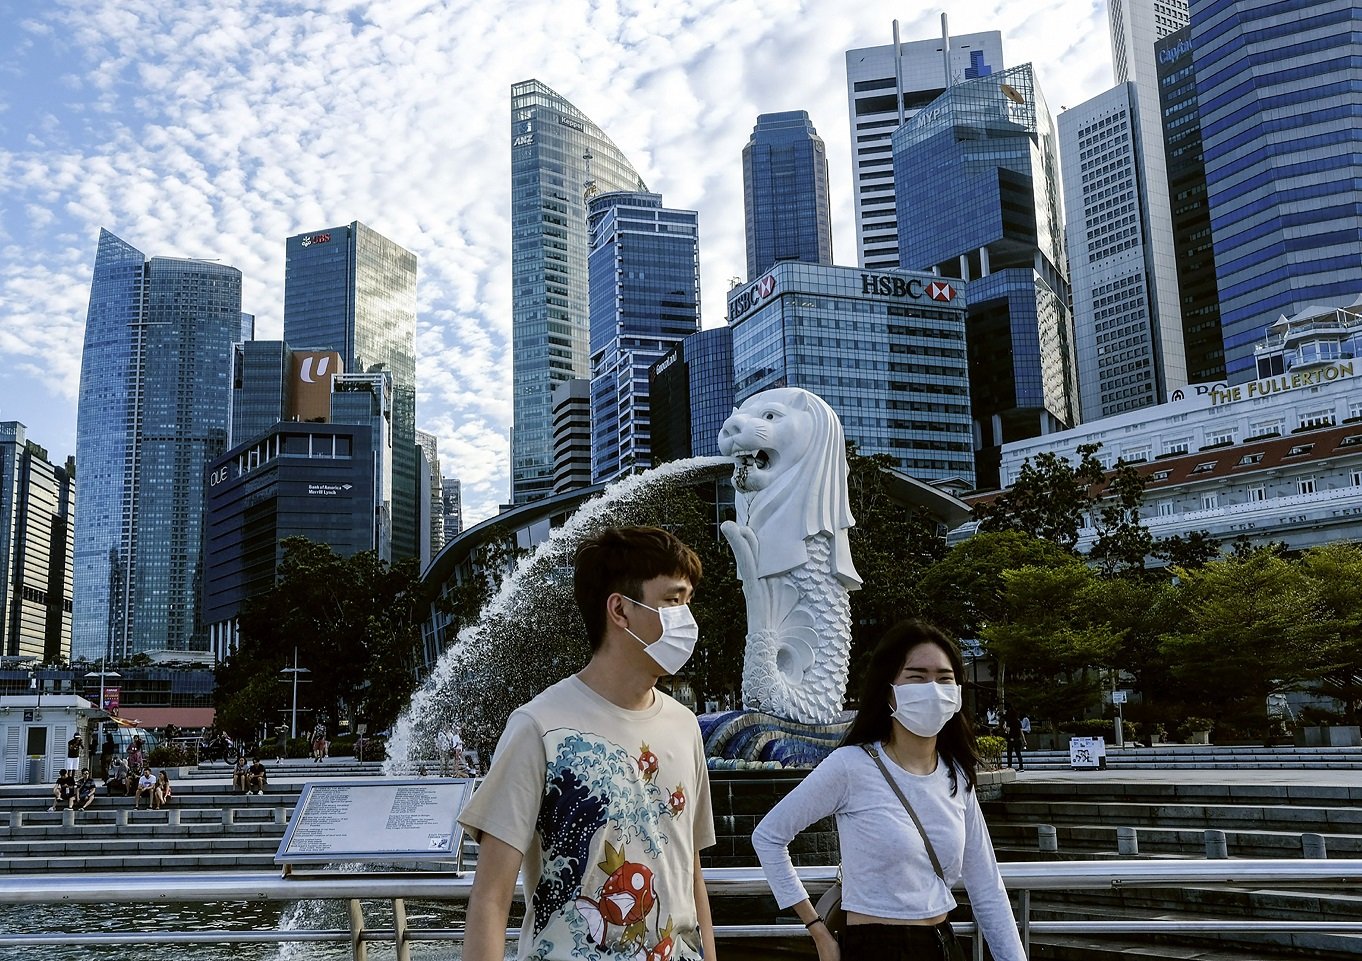 سنگاپور میں غیر ویکسین والے ملازمین پر اب کام کی جگہوں پر پابندی لگا دی گئی ہے۔